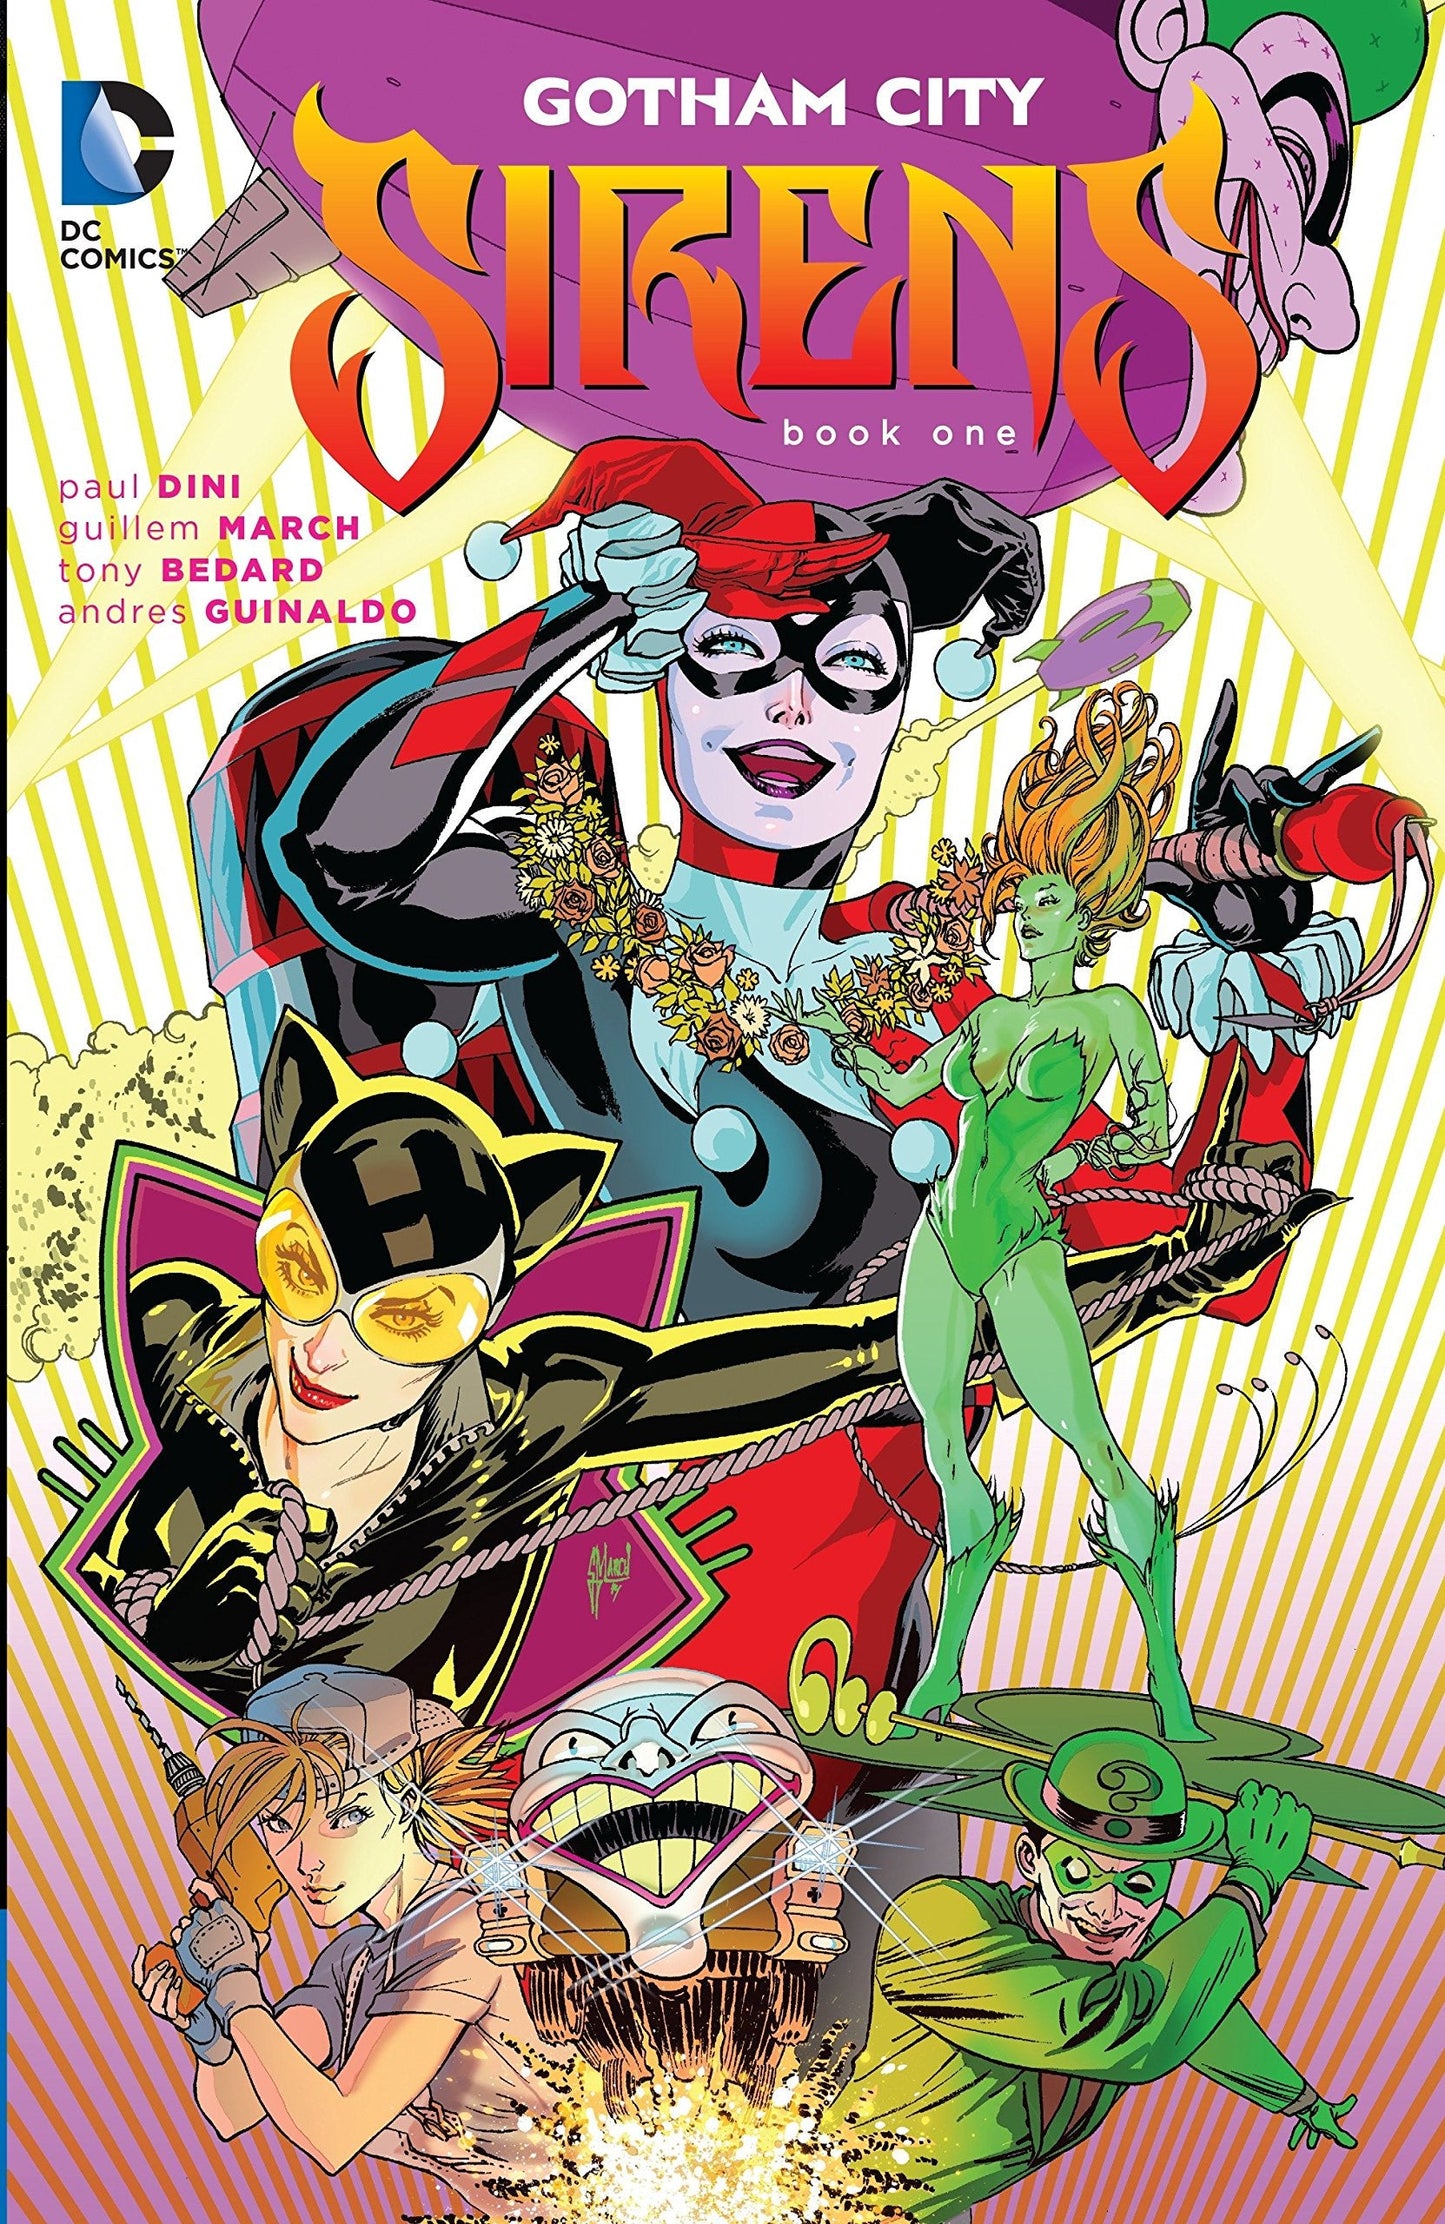 DC comics, DC graphic novels, gotham - Best Books